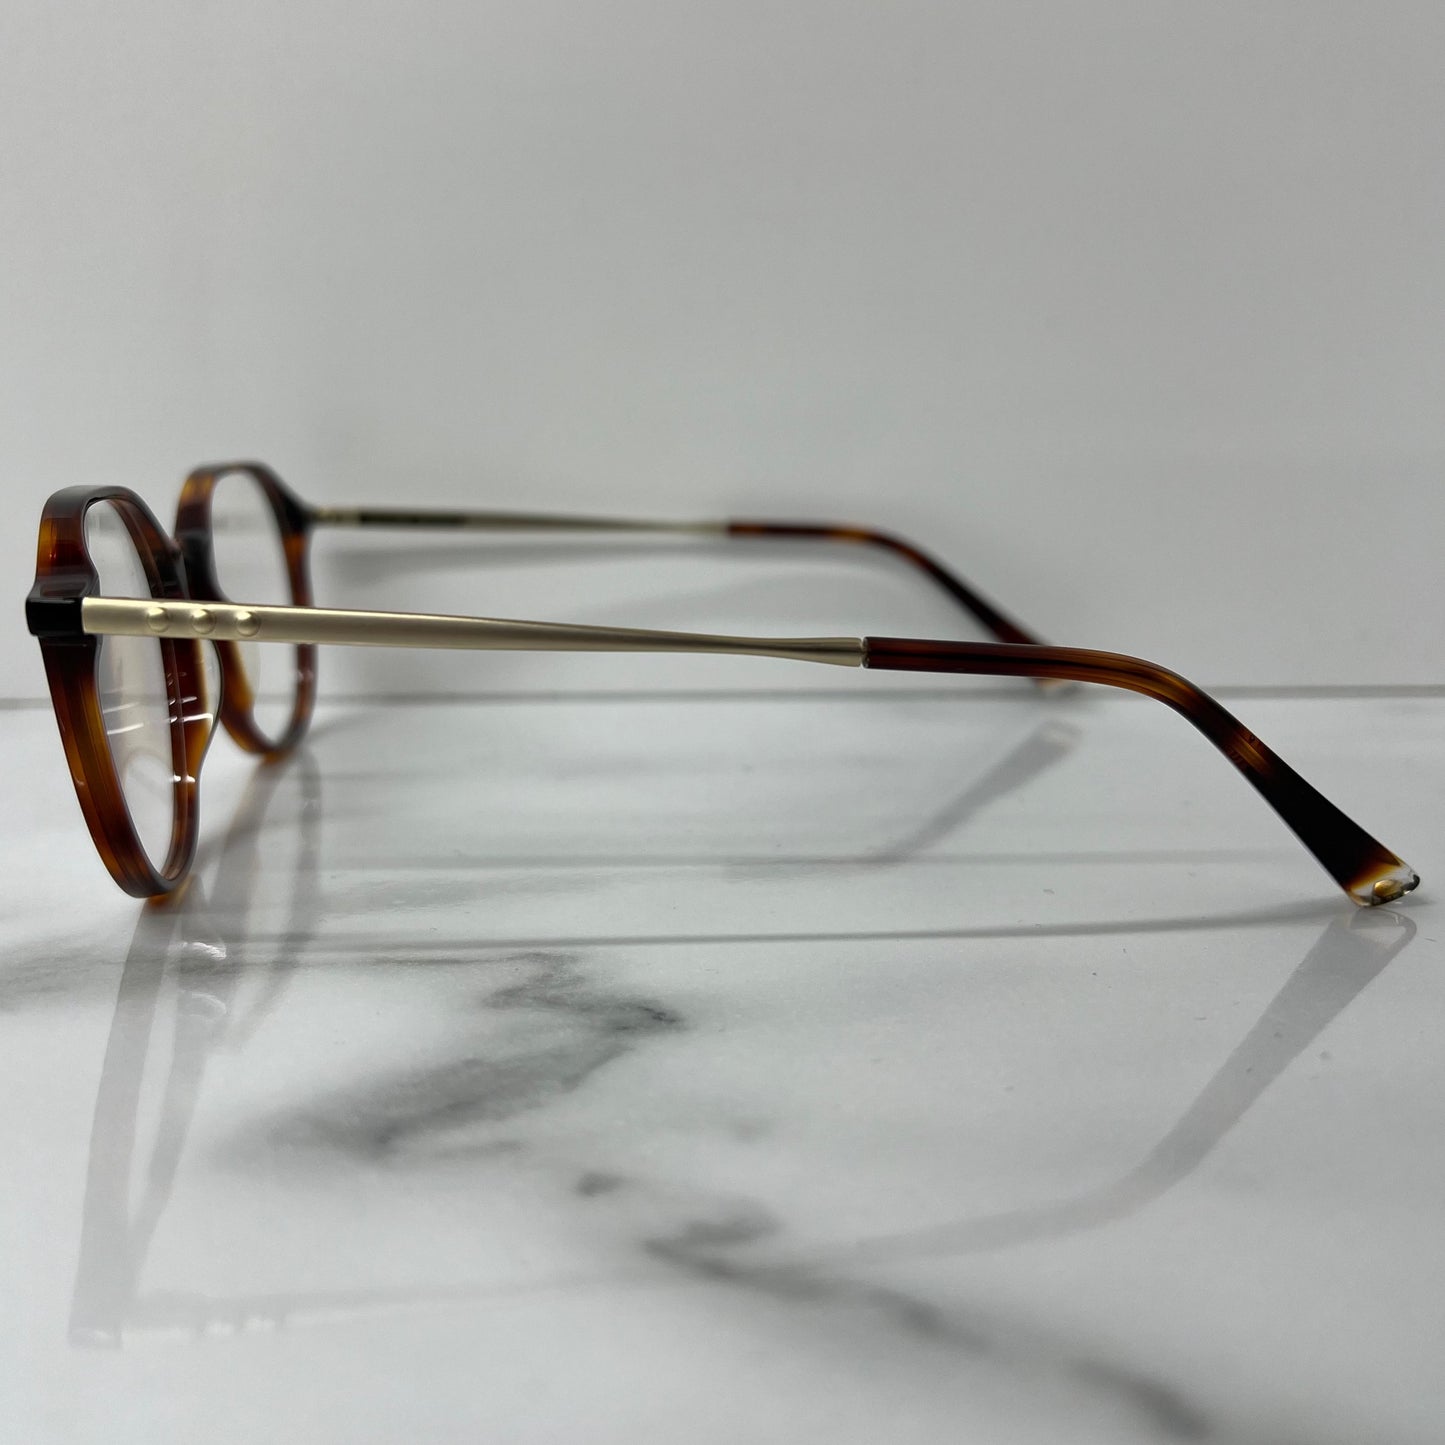 Taylor Morris SW2 C2 Prescription Optical Glasses